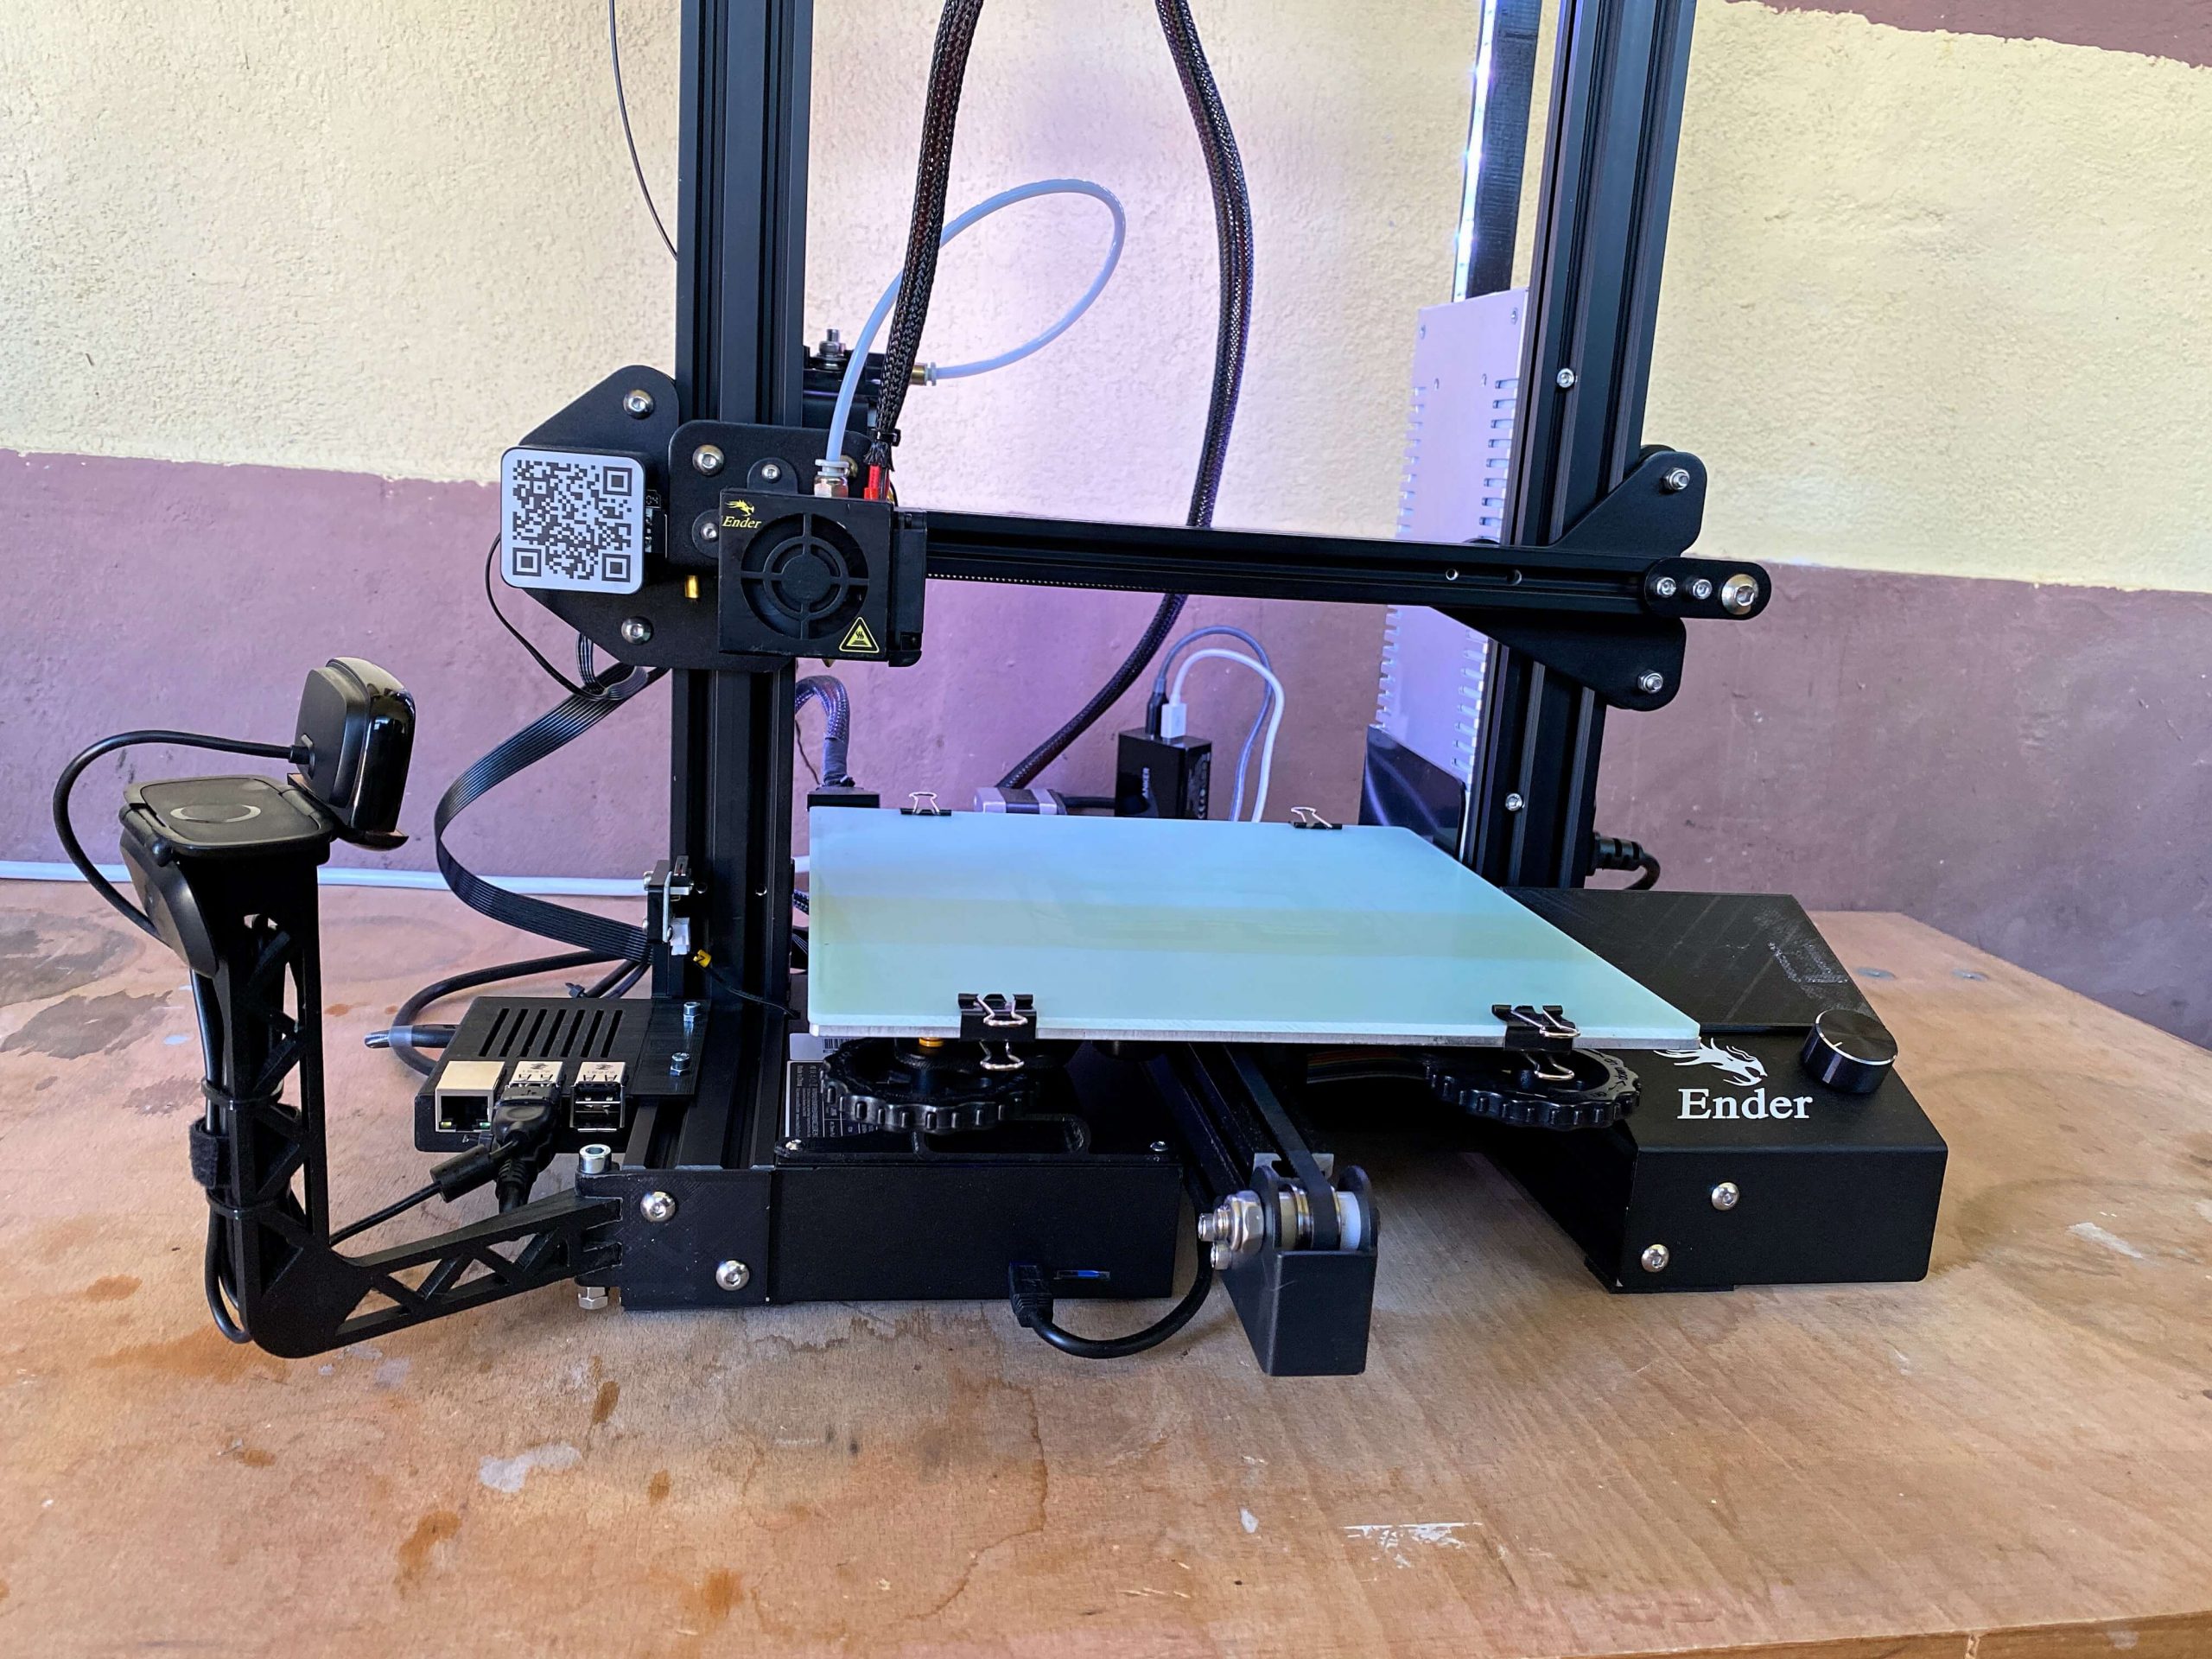 Ender-3-von-Creality-der-3D-Drucker-für-den-Einsteiger-und-Fortgeschrittenen2-scaled Ender 3 von Creality - der 3D-Drucker für den Einsteiger und Fortgeschrittenen